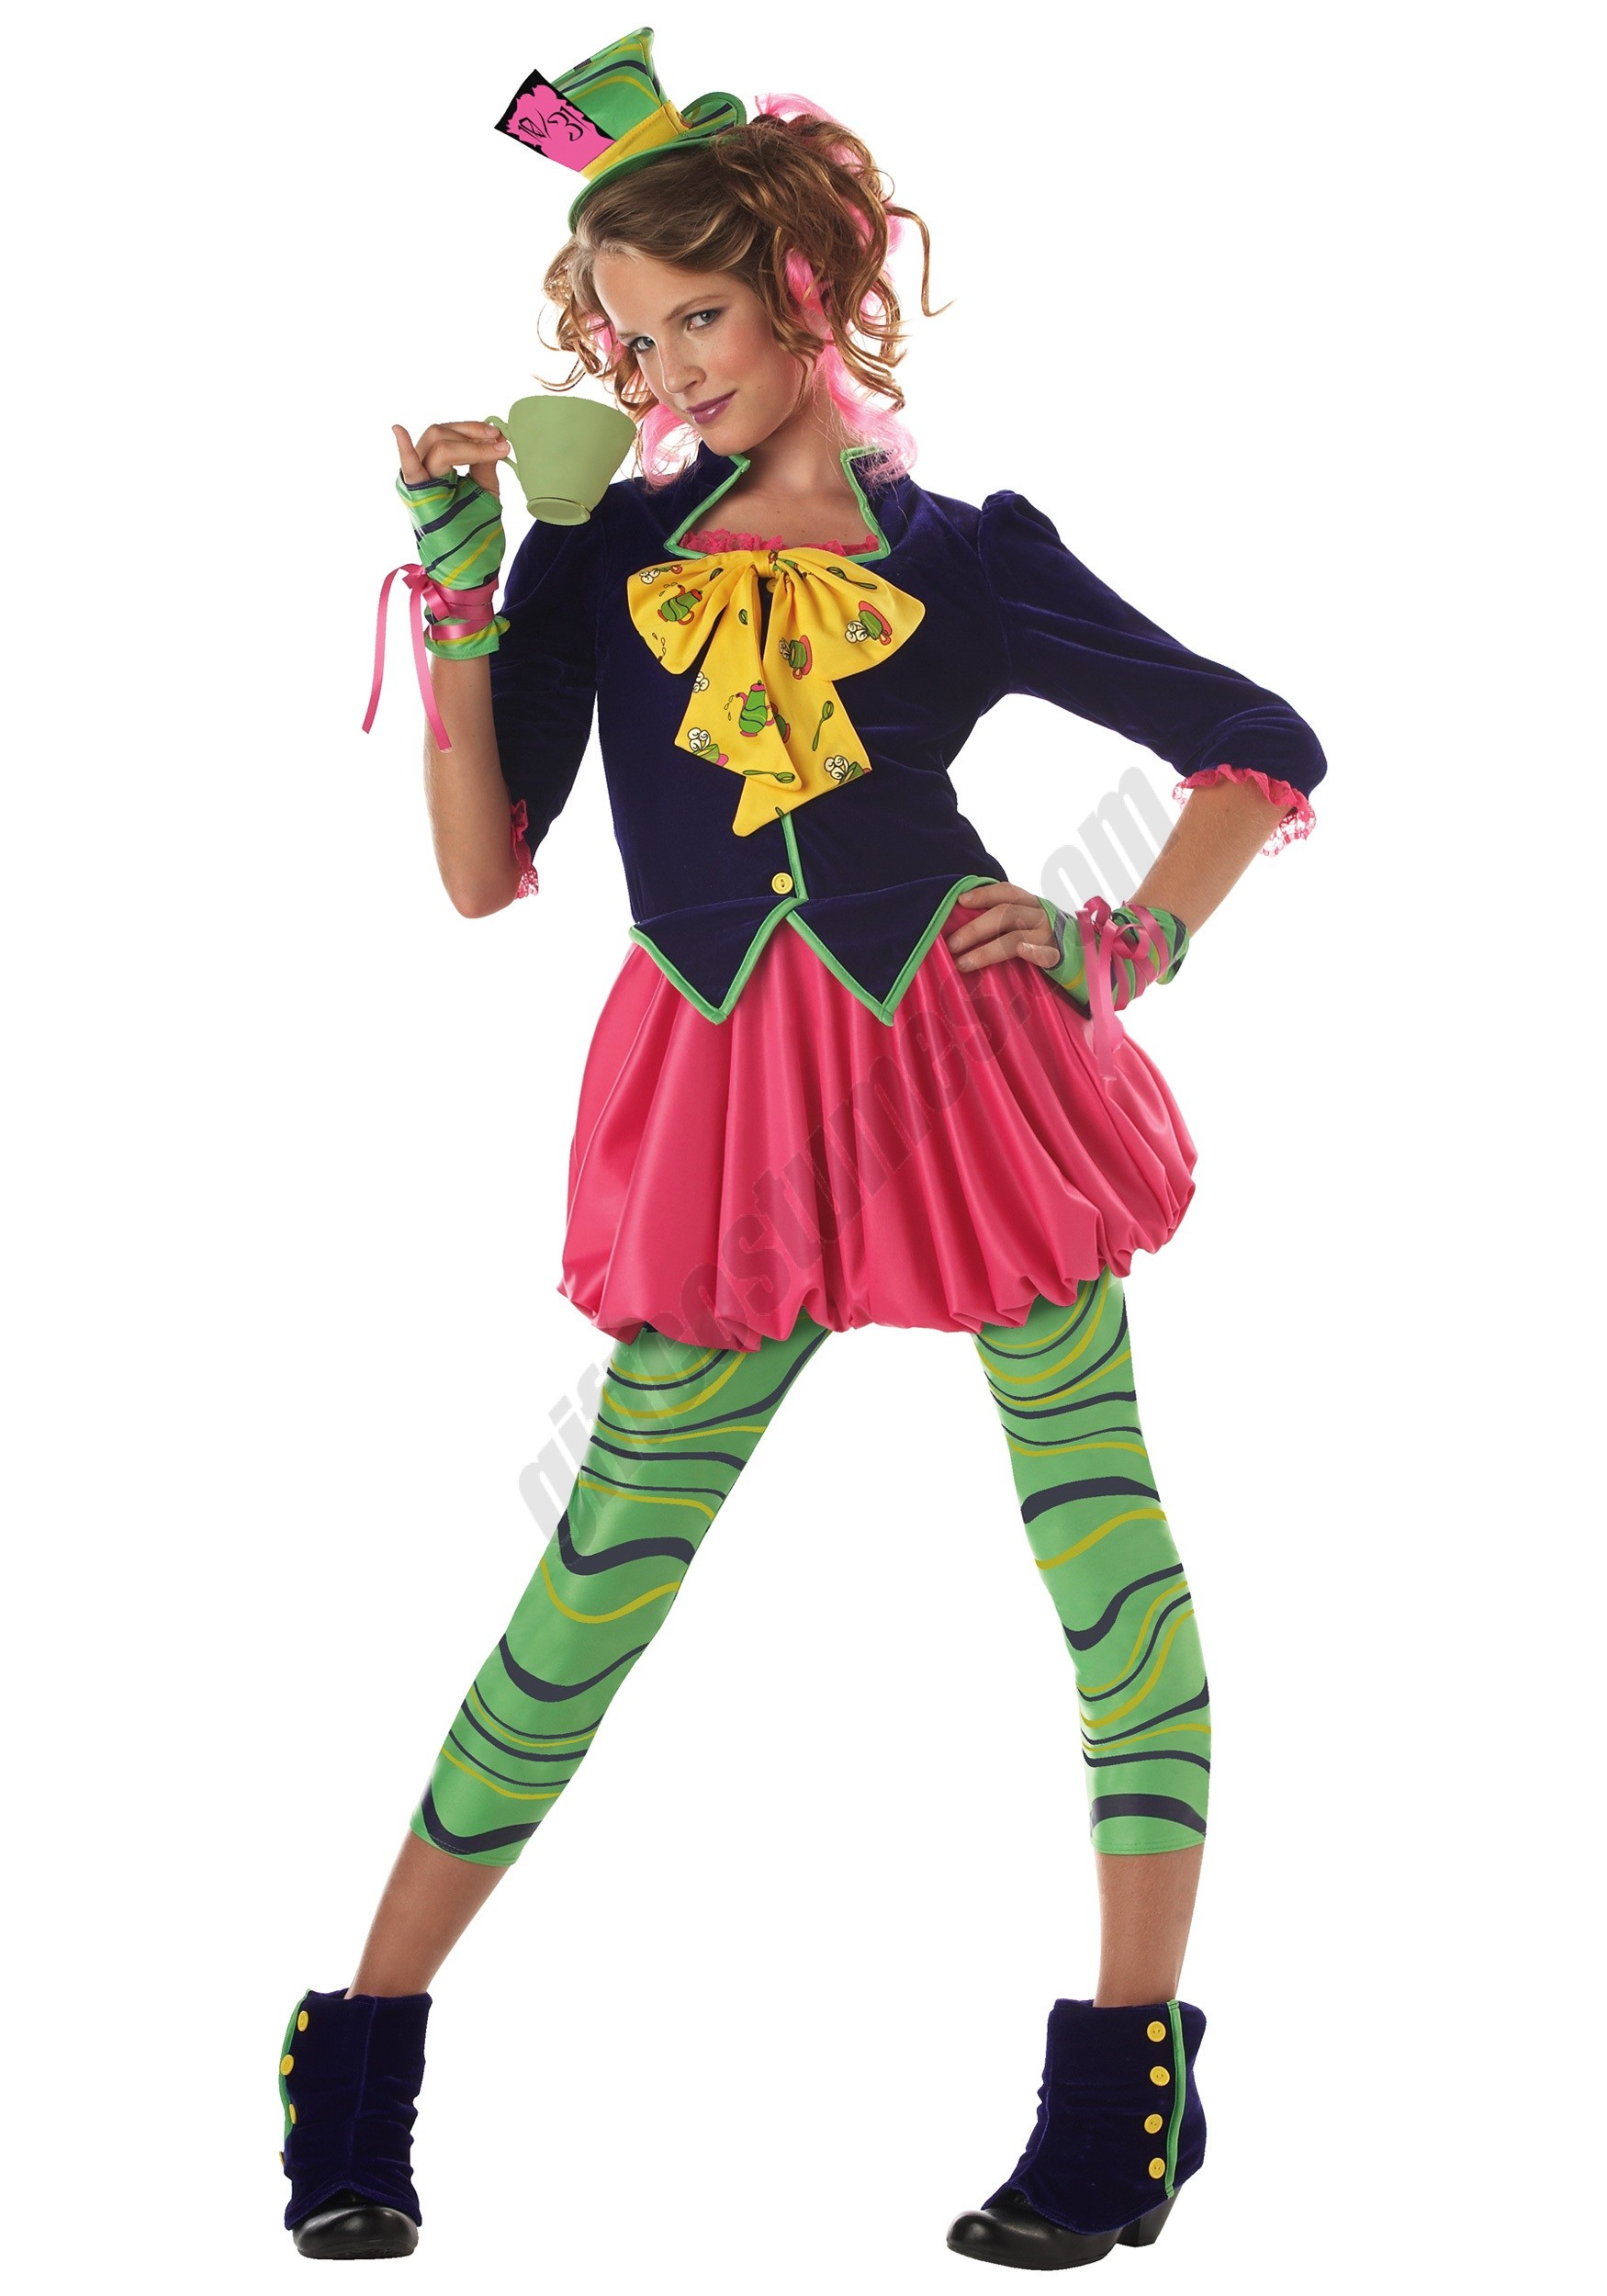 Tween Miss Mad Hatter Costume Promotions - Tween Miss Mad Hatter Costume Promotions